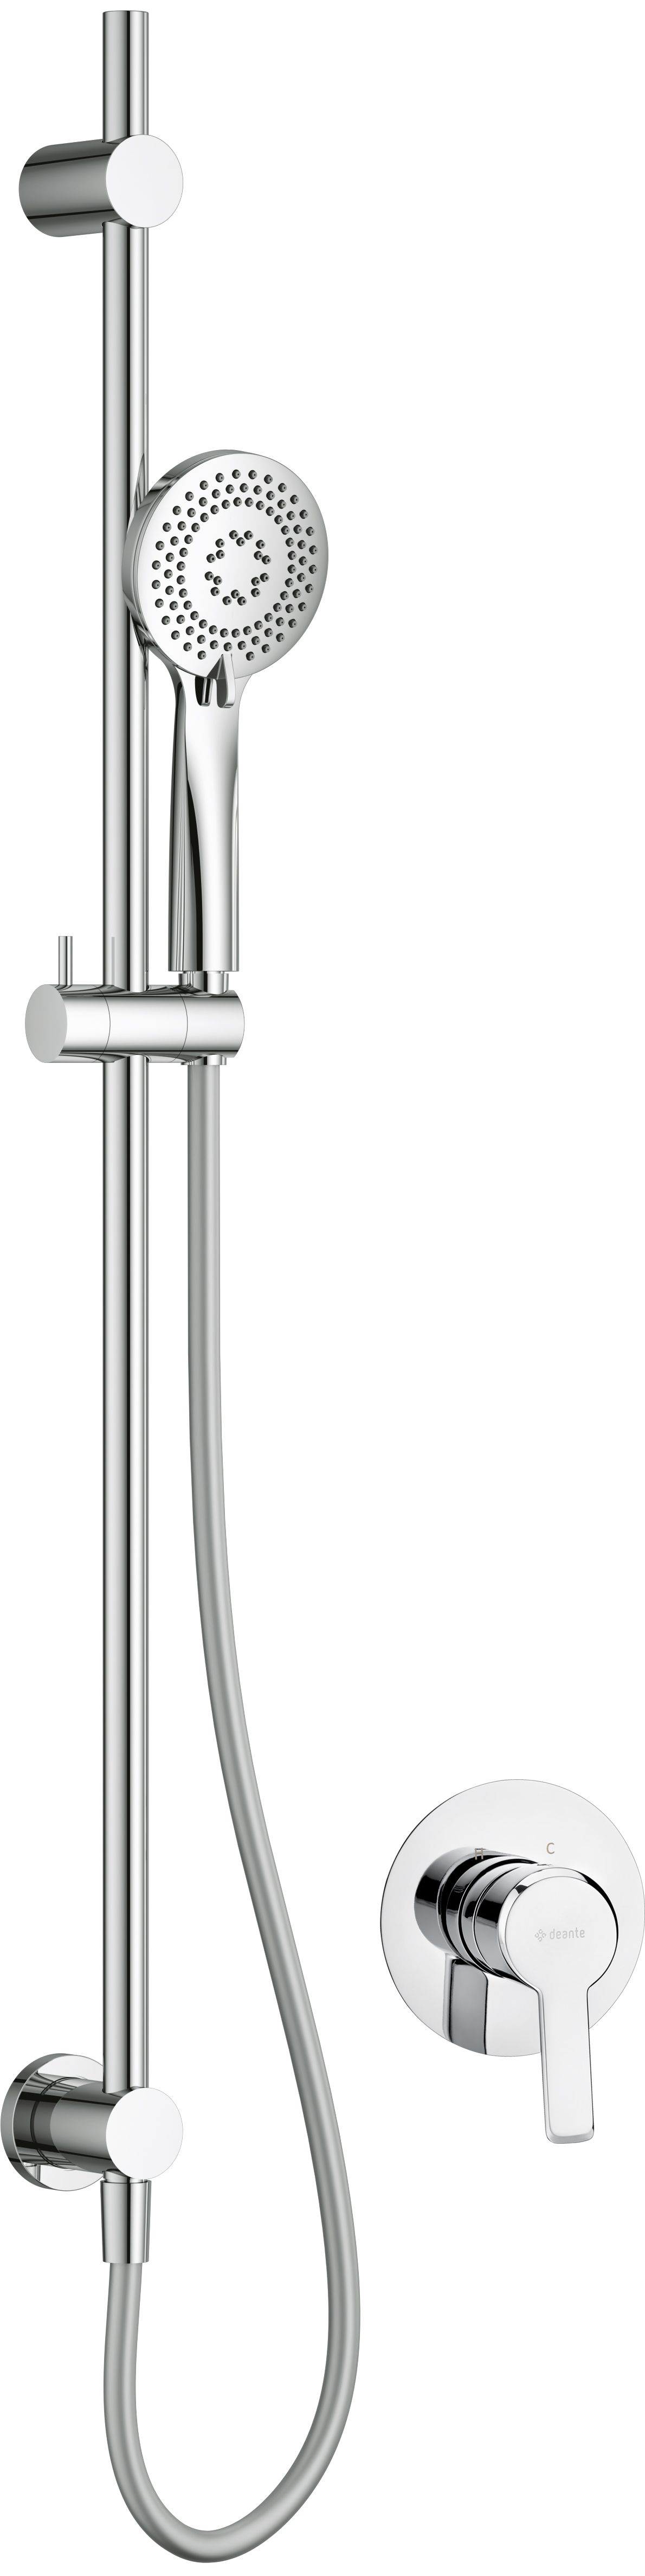 Concealed shower set, with sliding bar - NAC_09TP - Główne zdjęcie produktowe